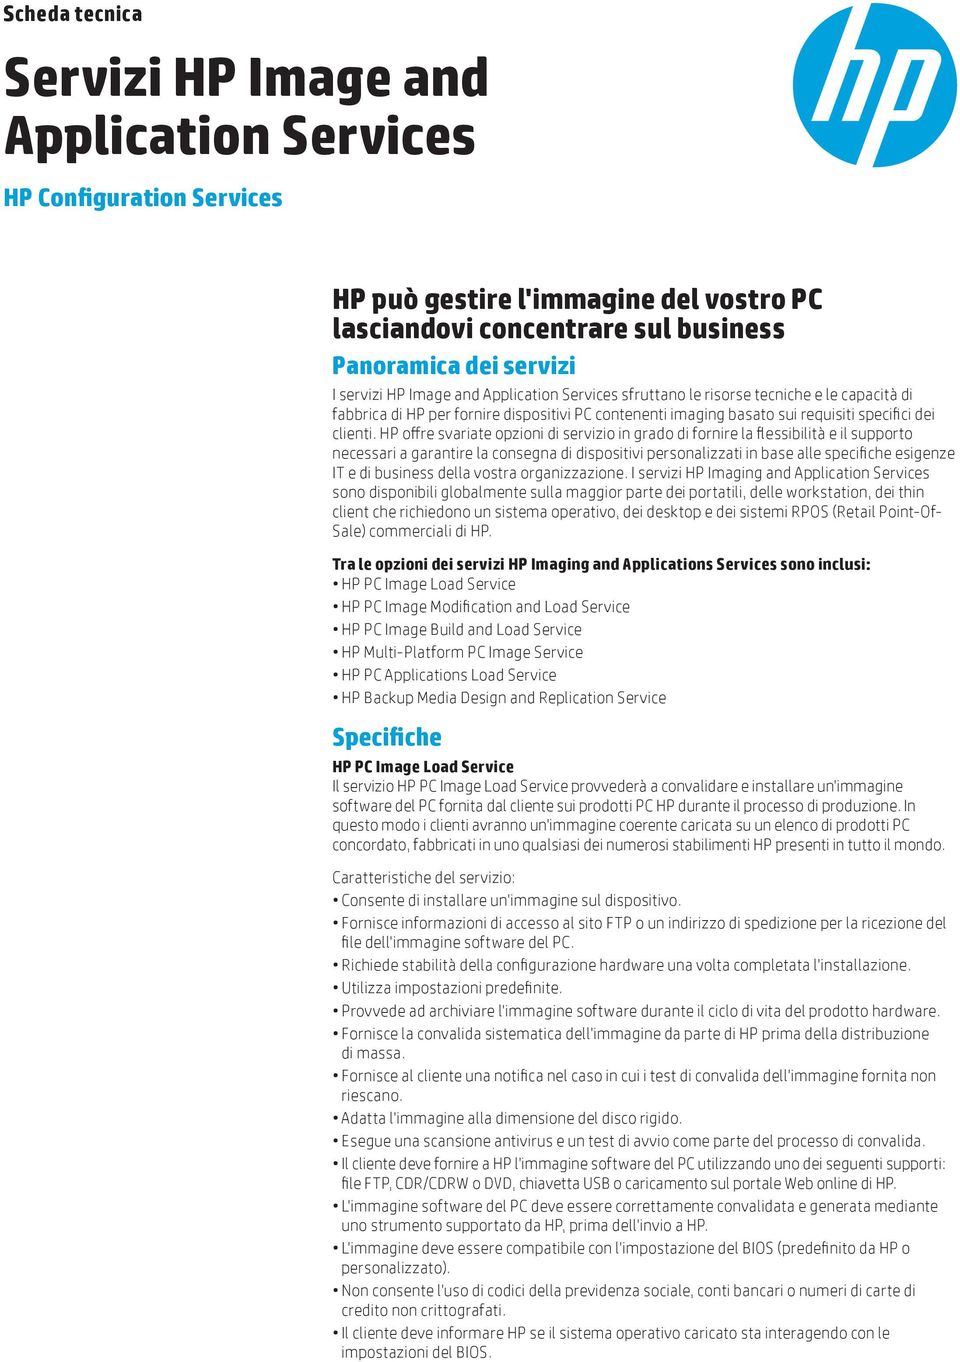 HP offre svariate opzioni di servizio in grado di fornire la flessibilità e il supporto necessari a garantire la consegna di dispositivi personalizzati in base alle specifiche esigenze IT e di